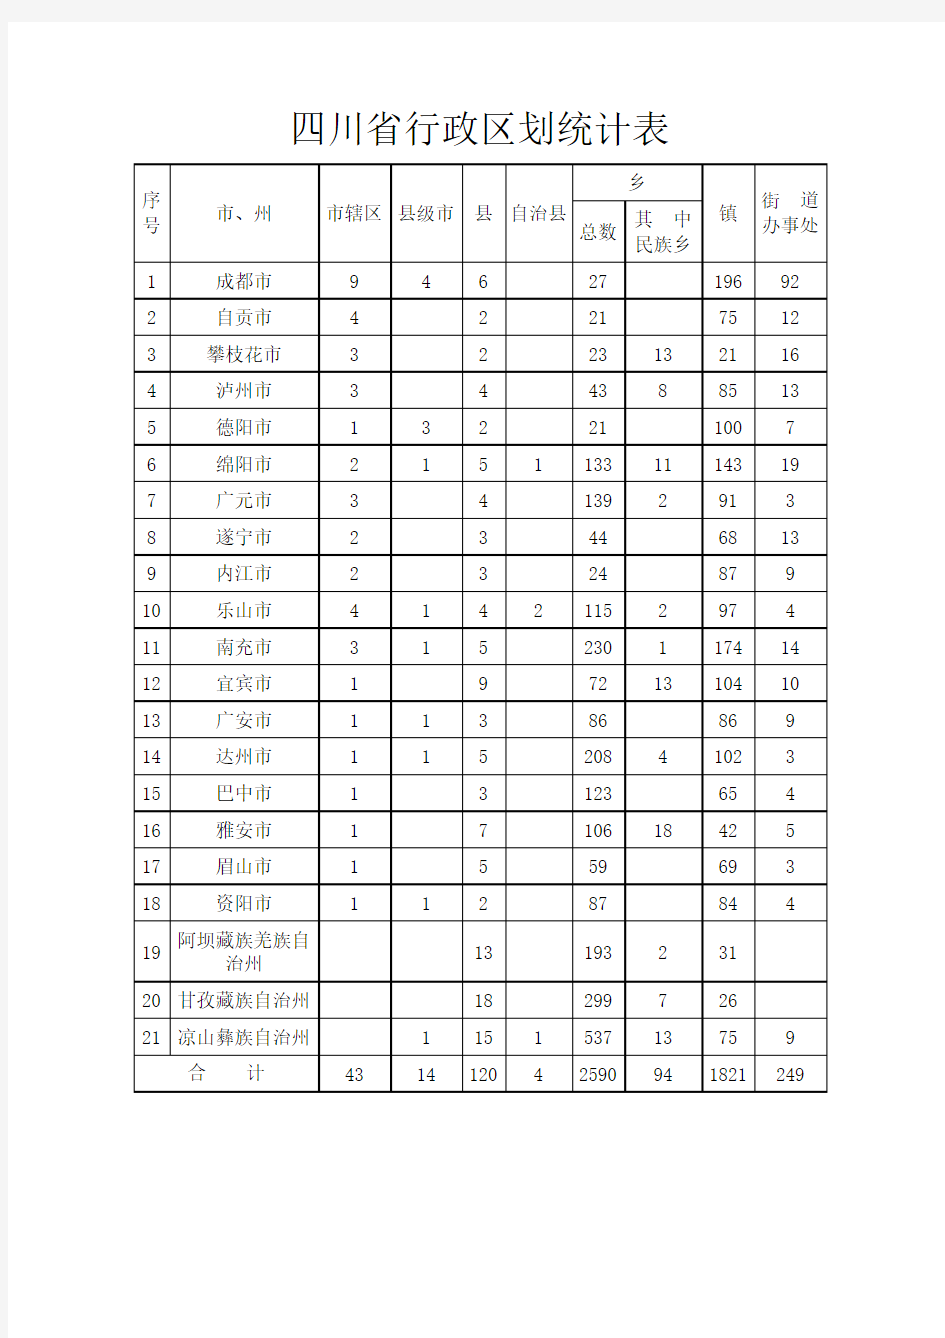 四川省行政区划统计表